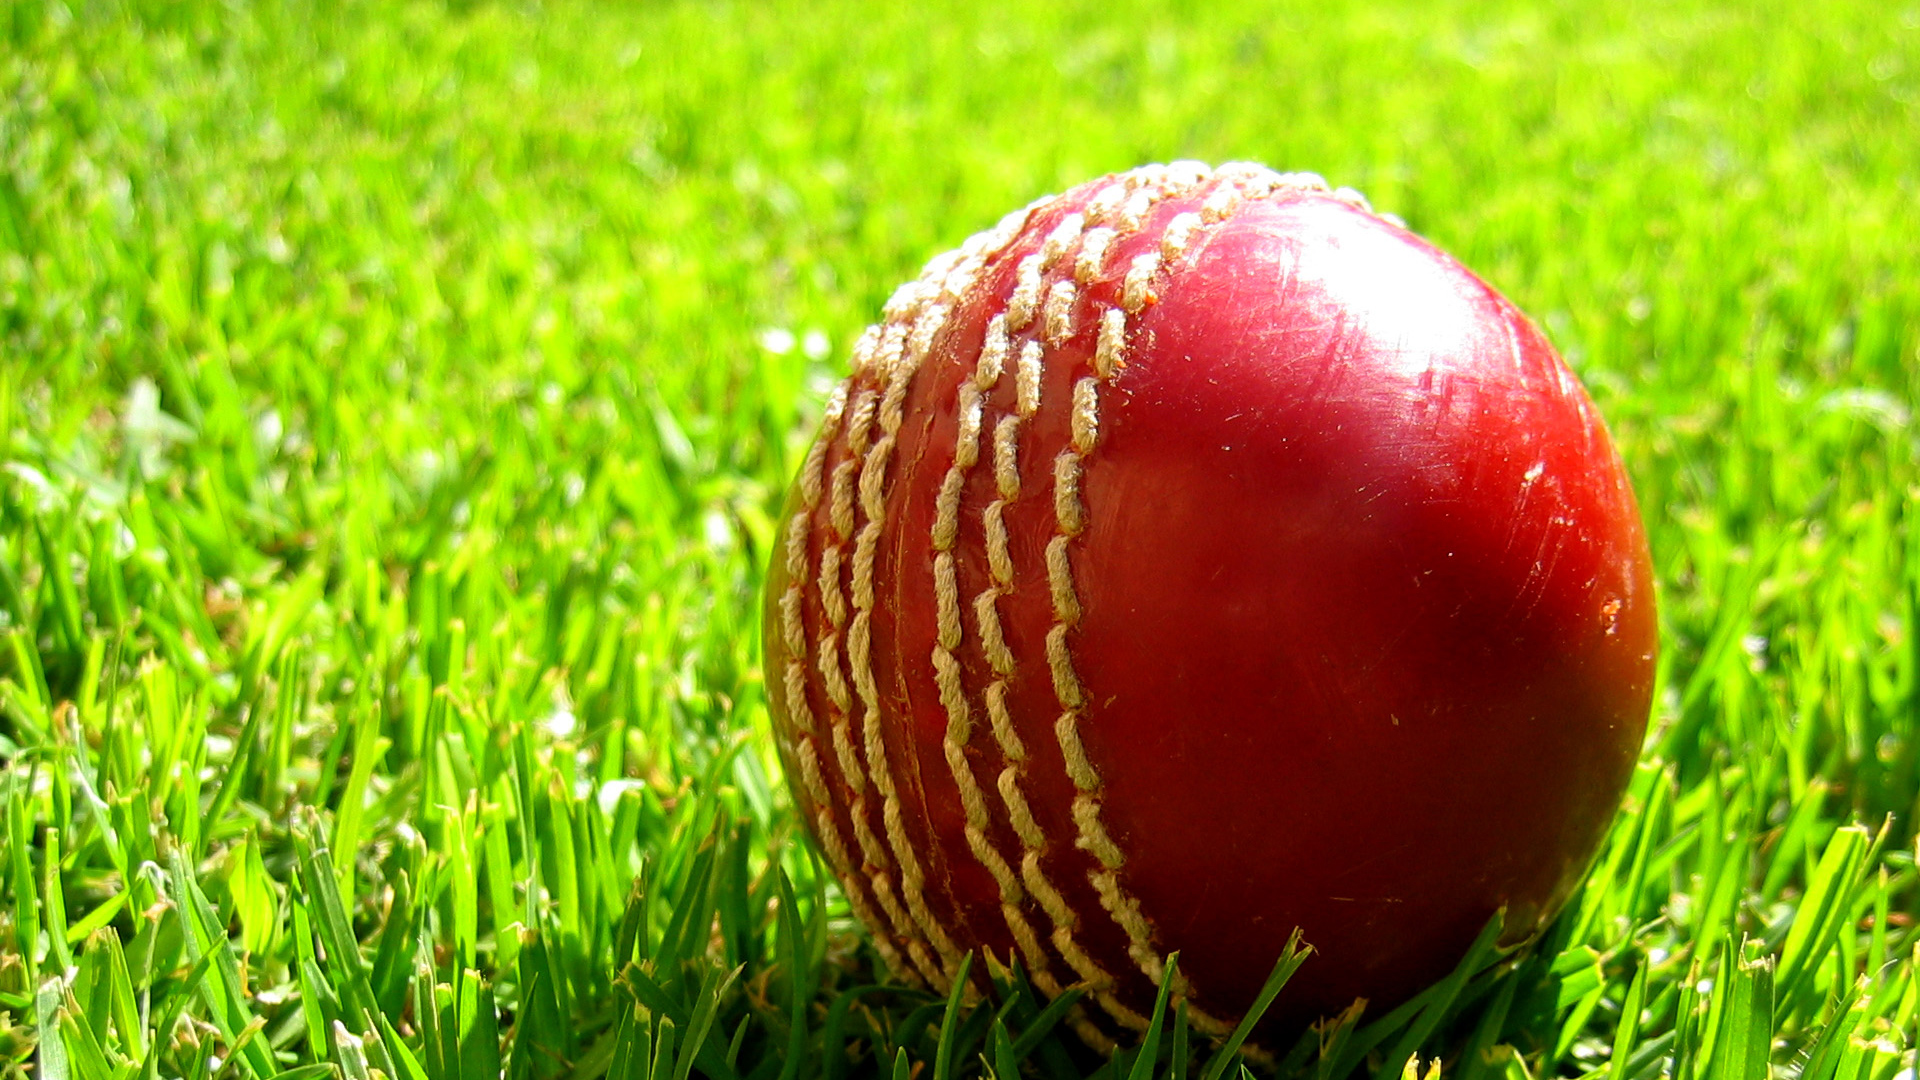 Скачать обои Крикет на телефон бесплатно